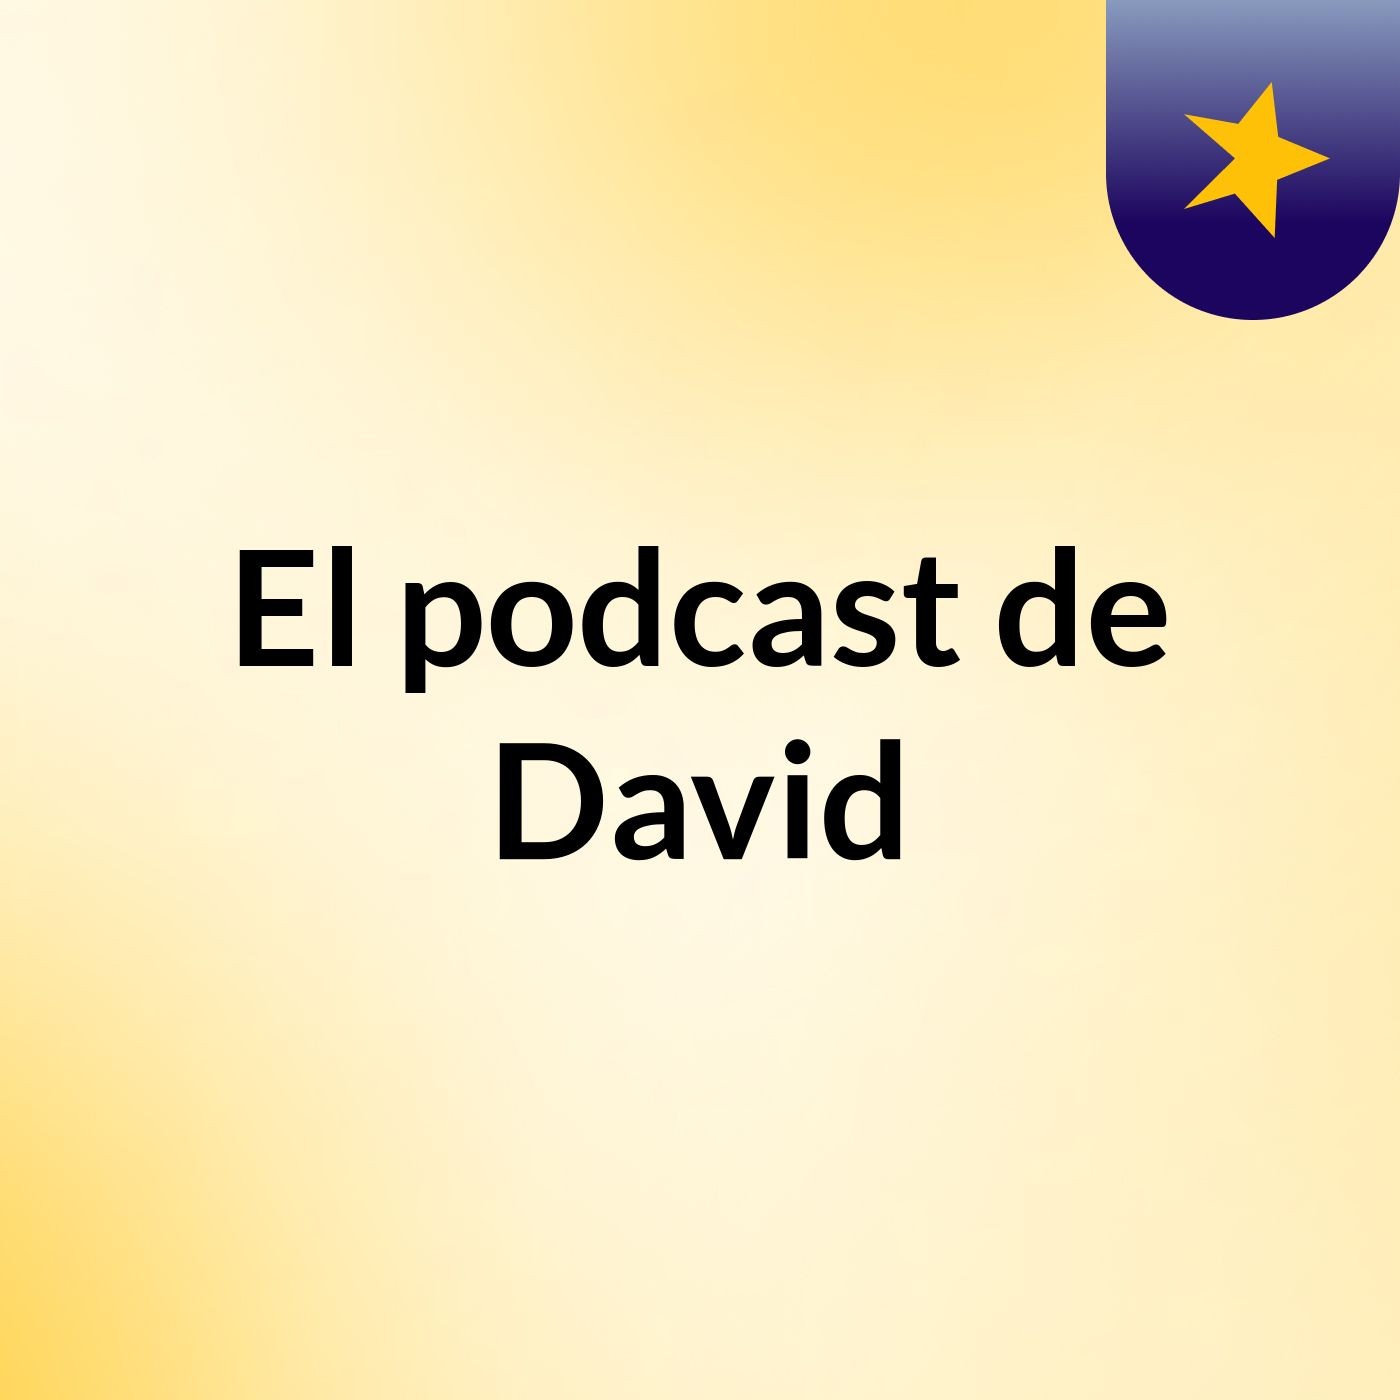 Episodio 1 - El podcast de David